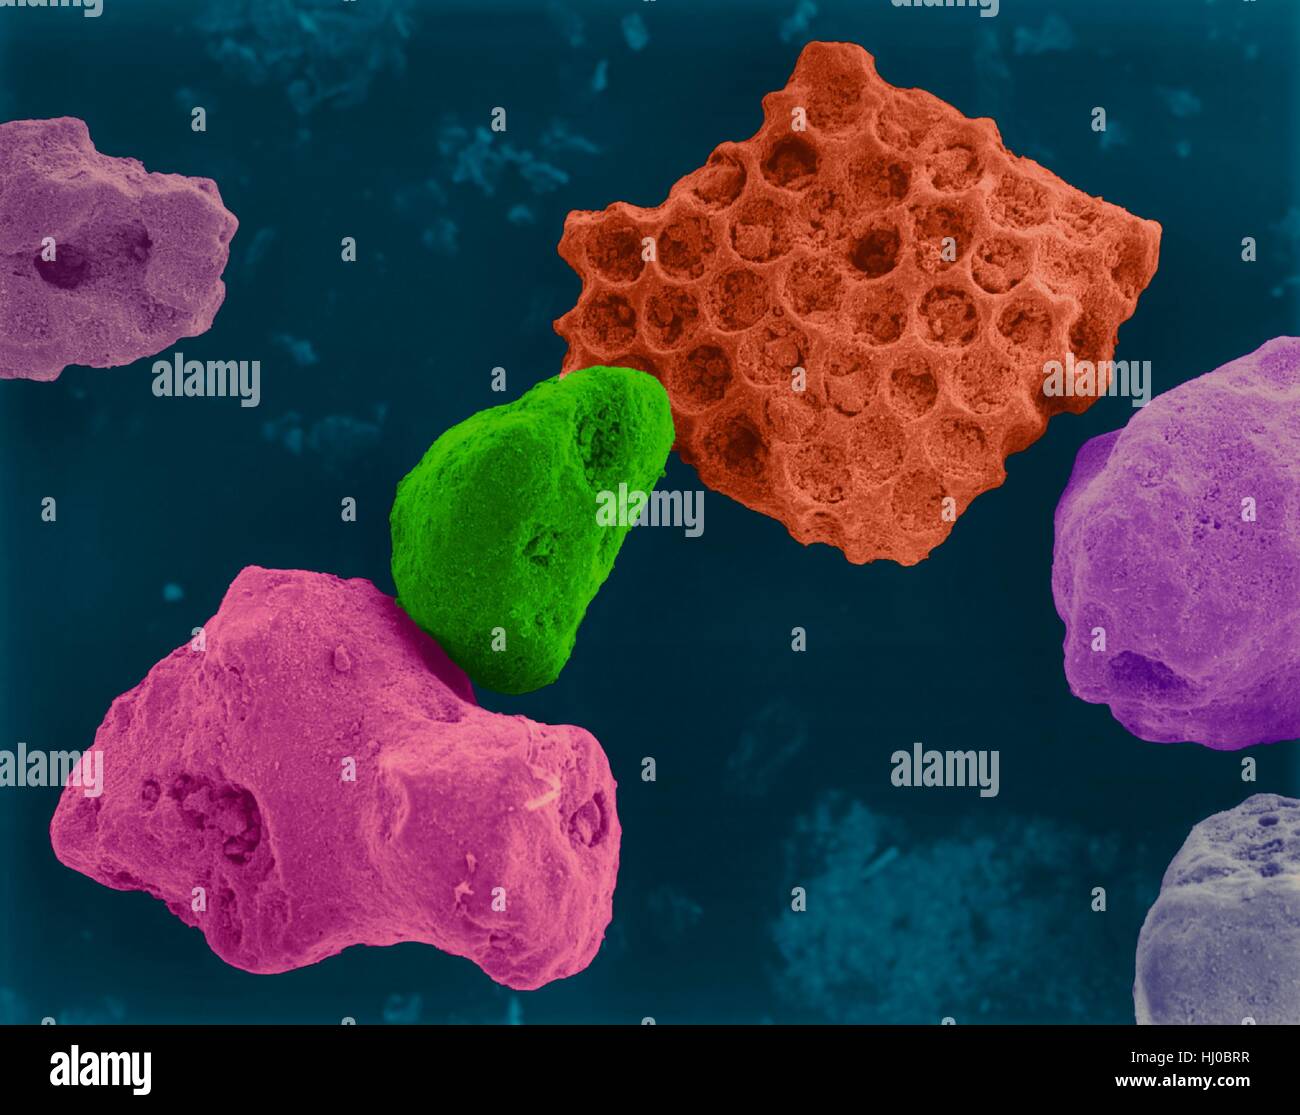 Farbige scanning Electron Schliffbild (SEM) von Korallensand (Kailua, Hawaii). Strandsand enthält Gestein Mineralien und Skelette, die aus lebenden Organismen (z.B. Korallen) abgeleitet worden zu sein. Sandkörner aus Koralle hergestellt haben feine Löcher und sind aufgrund von Abnutzung durch die Oberfläche Wirkung glatter. Vergrößerung: X43 wenn kürzeste Achse bei 25 Millimetern gedruckt. Stockfoto